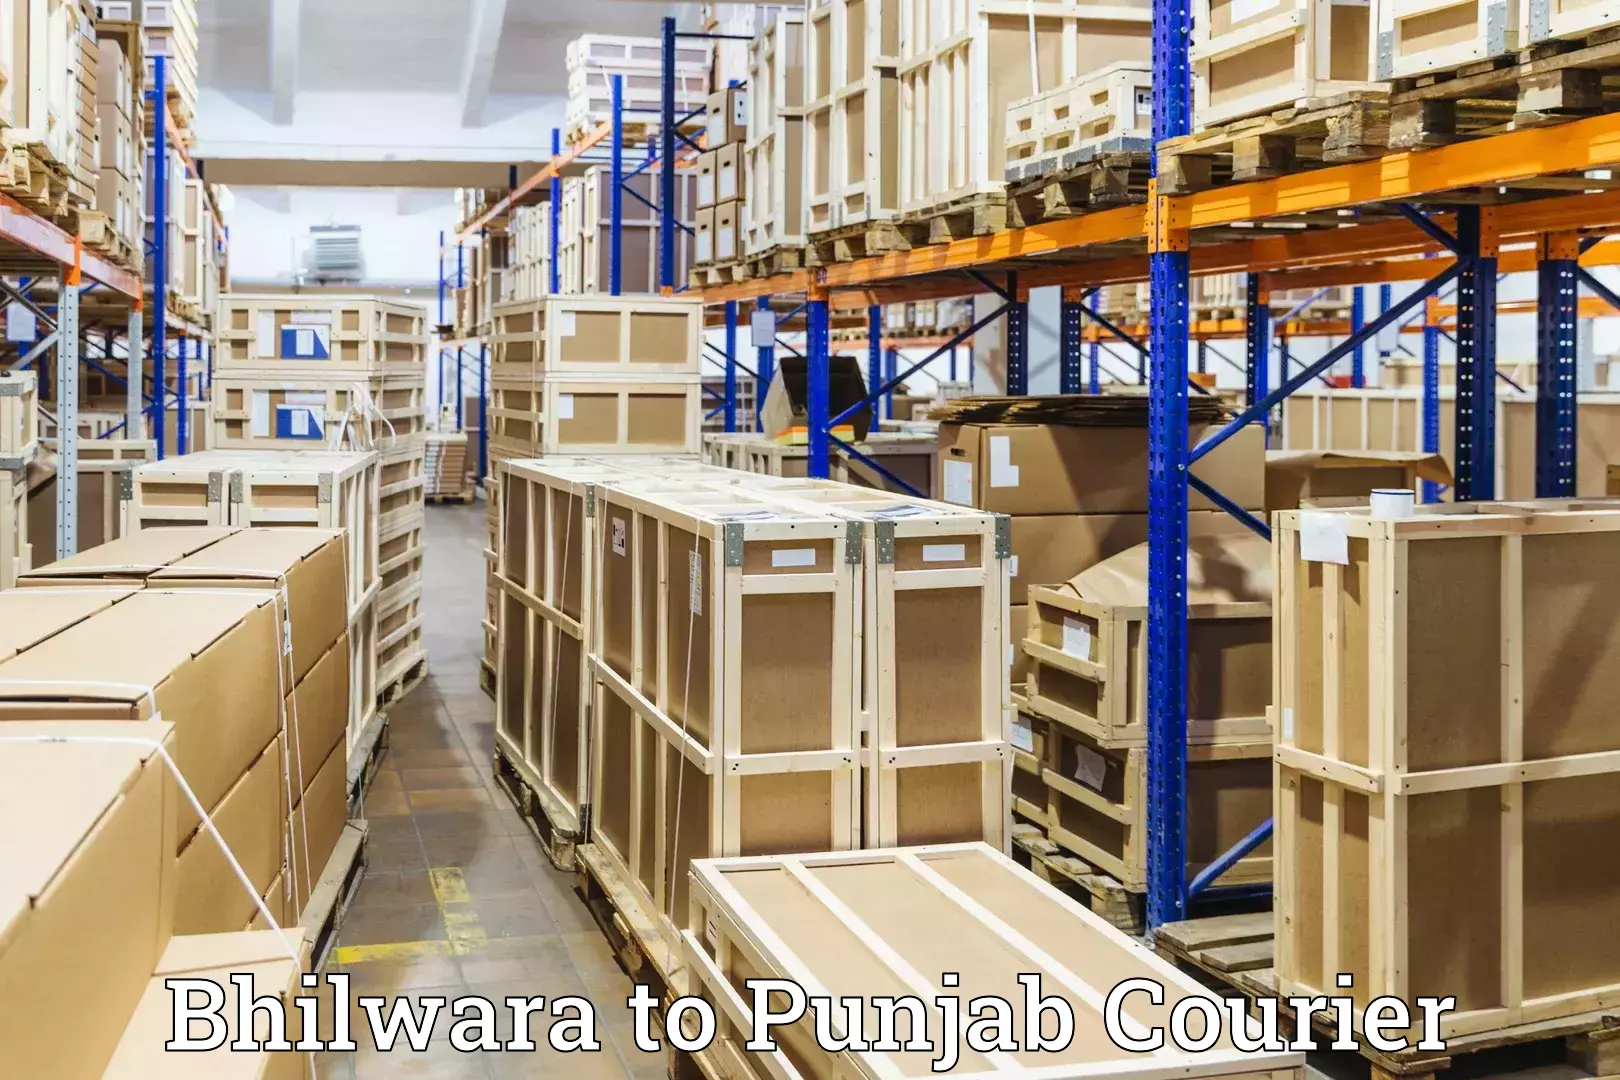 Luggage transport deals Bhilwara to Punjab